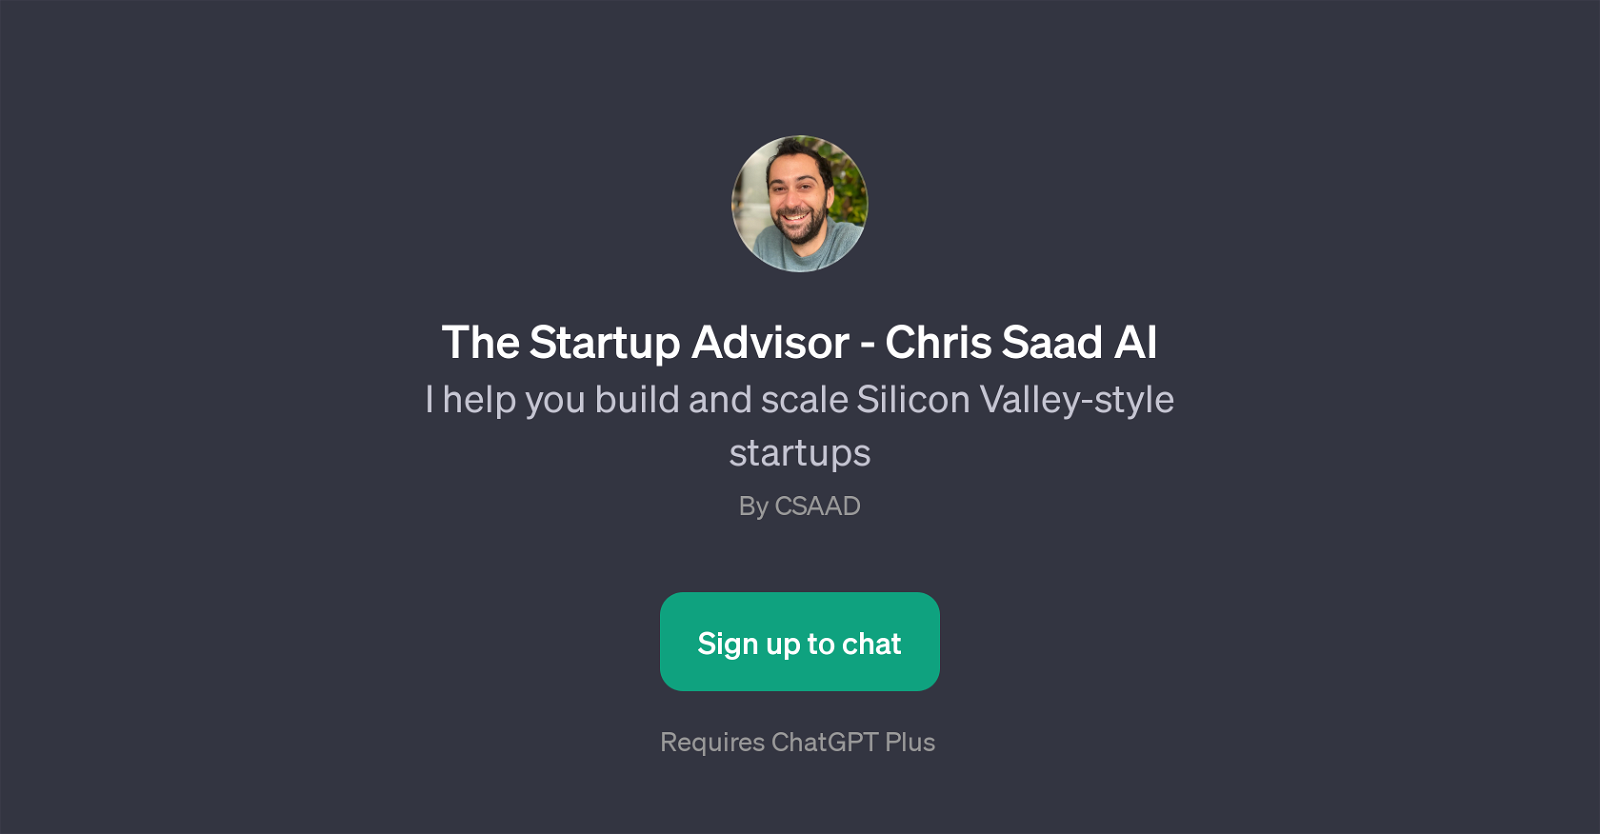 The Startup Advisor - Chris Saad AI website